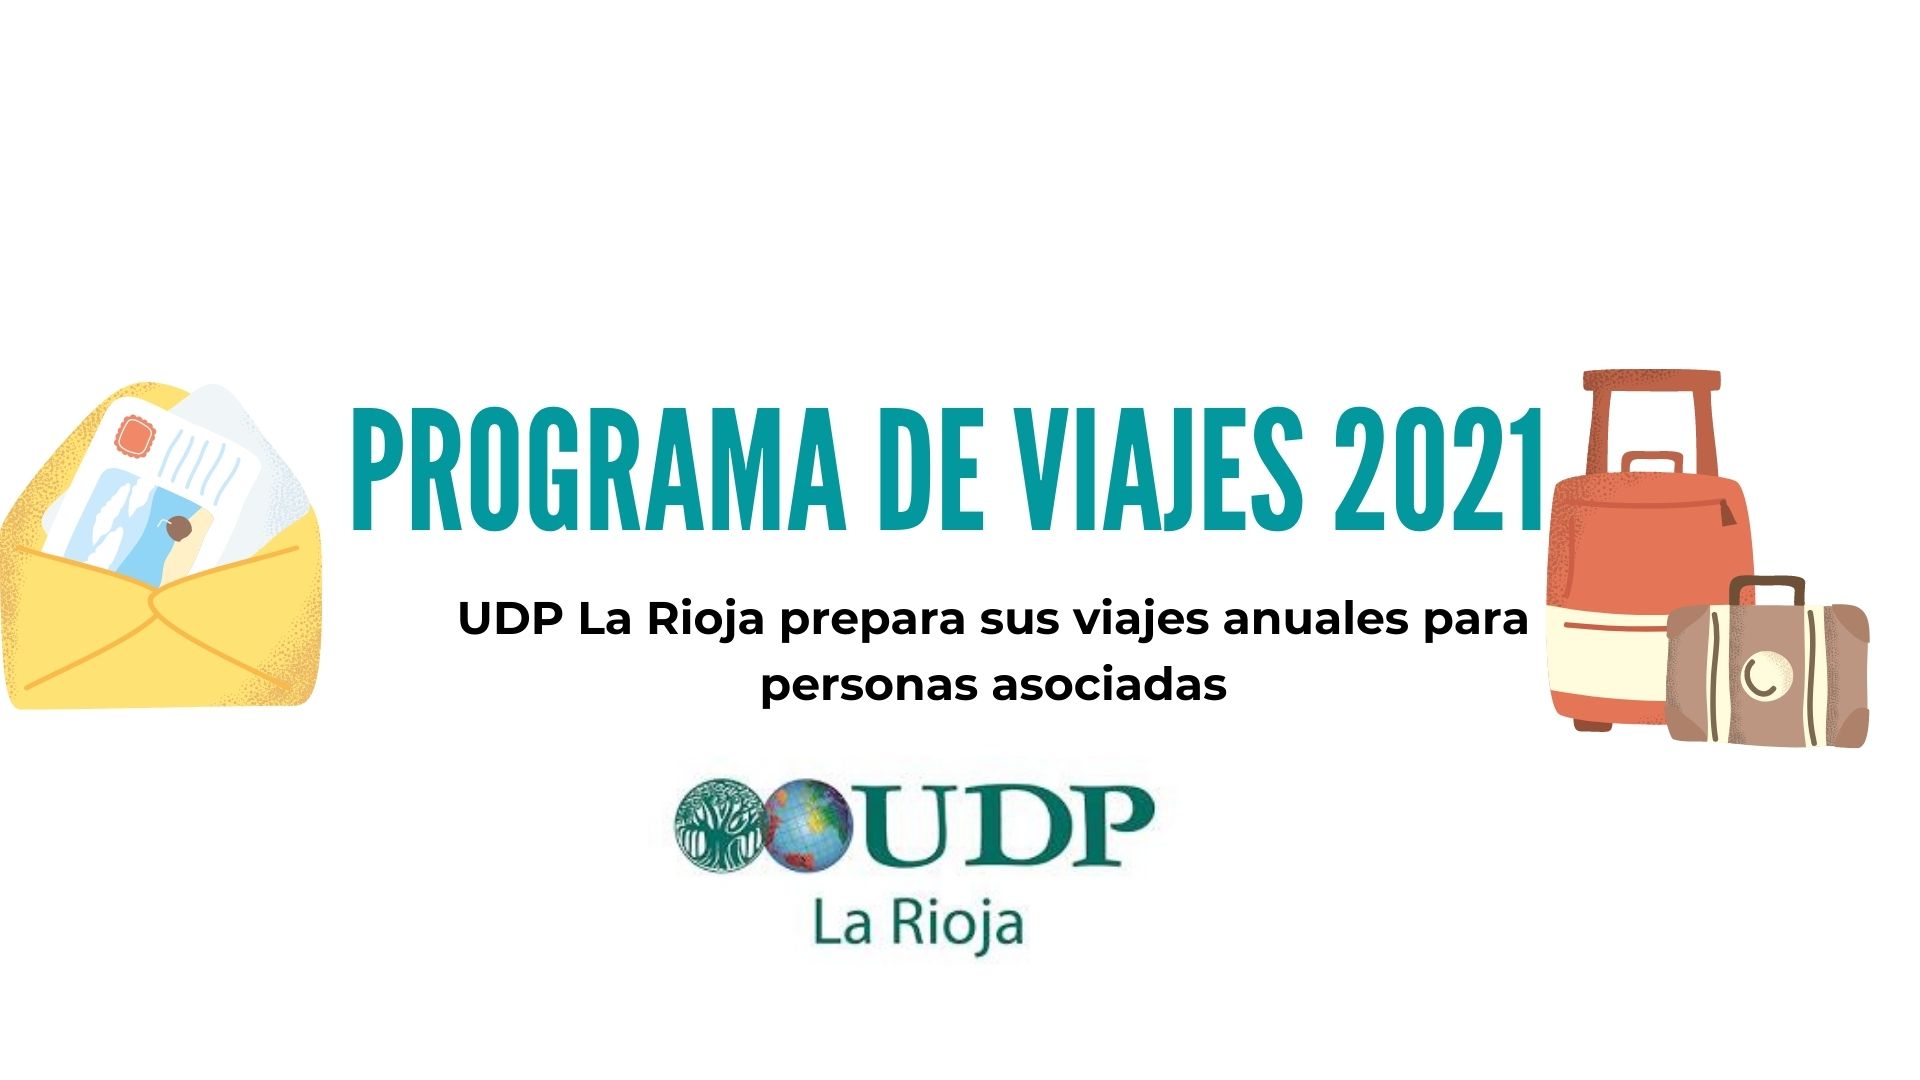 UDP La Rioja prepara sus viajes anuales para personas asociadas